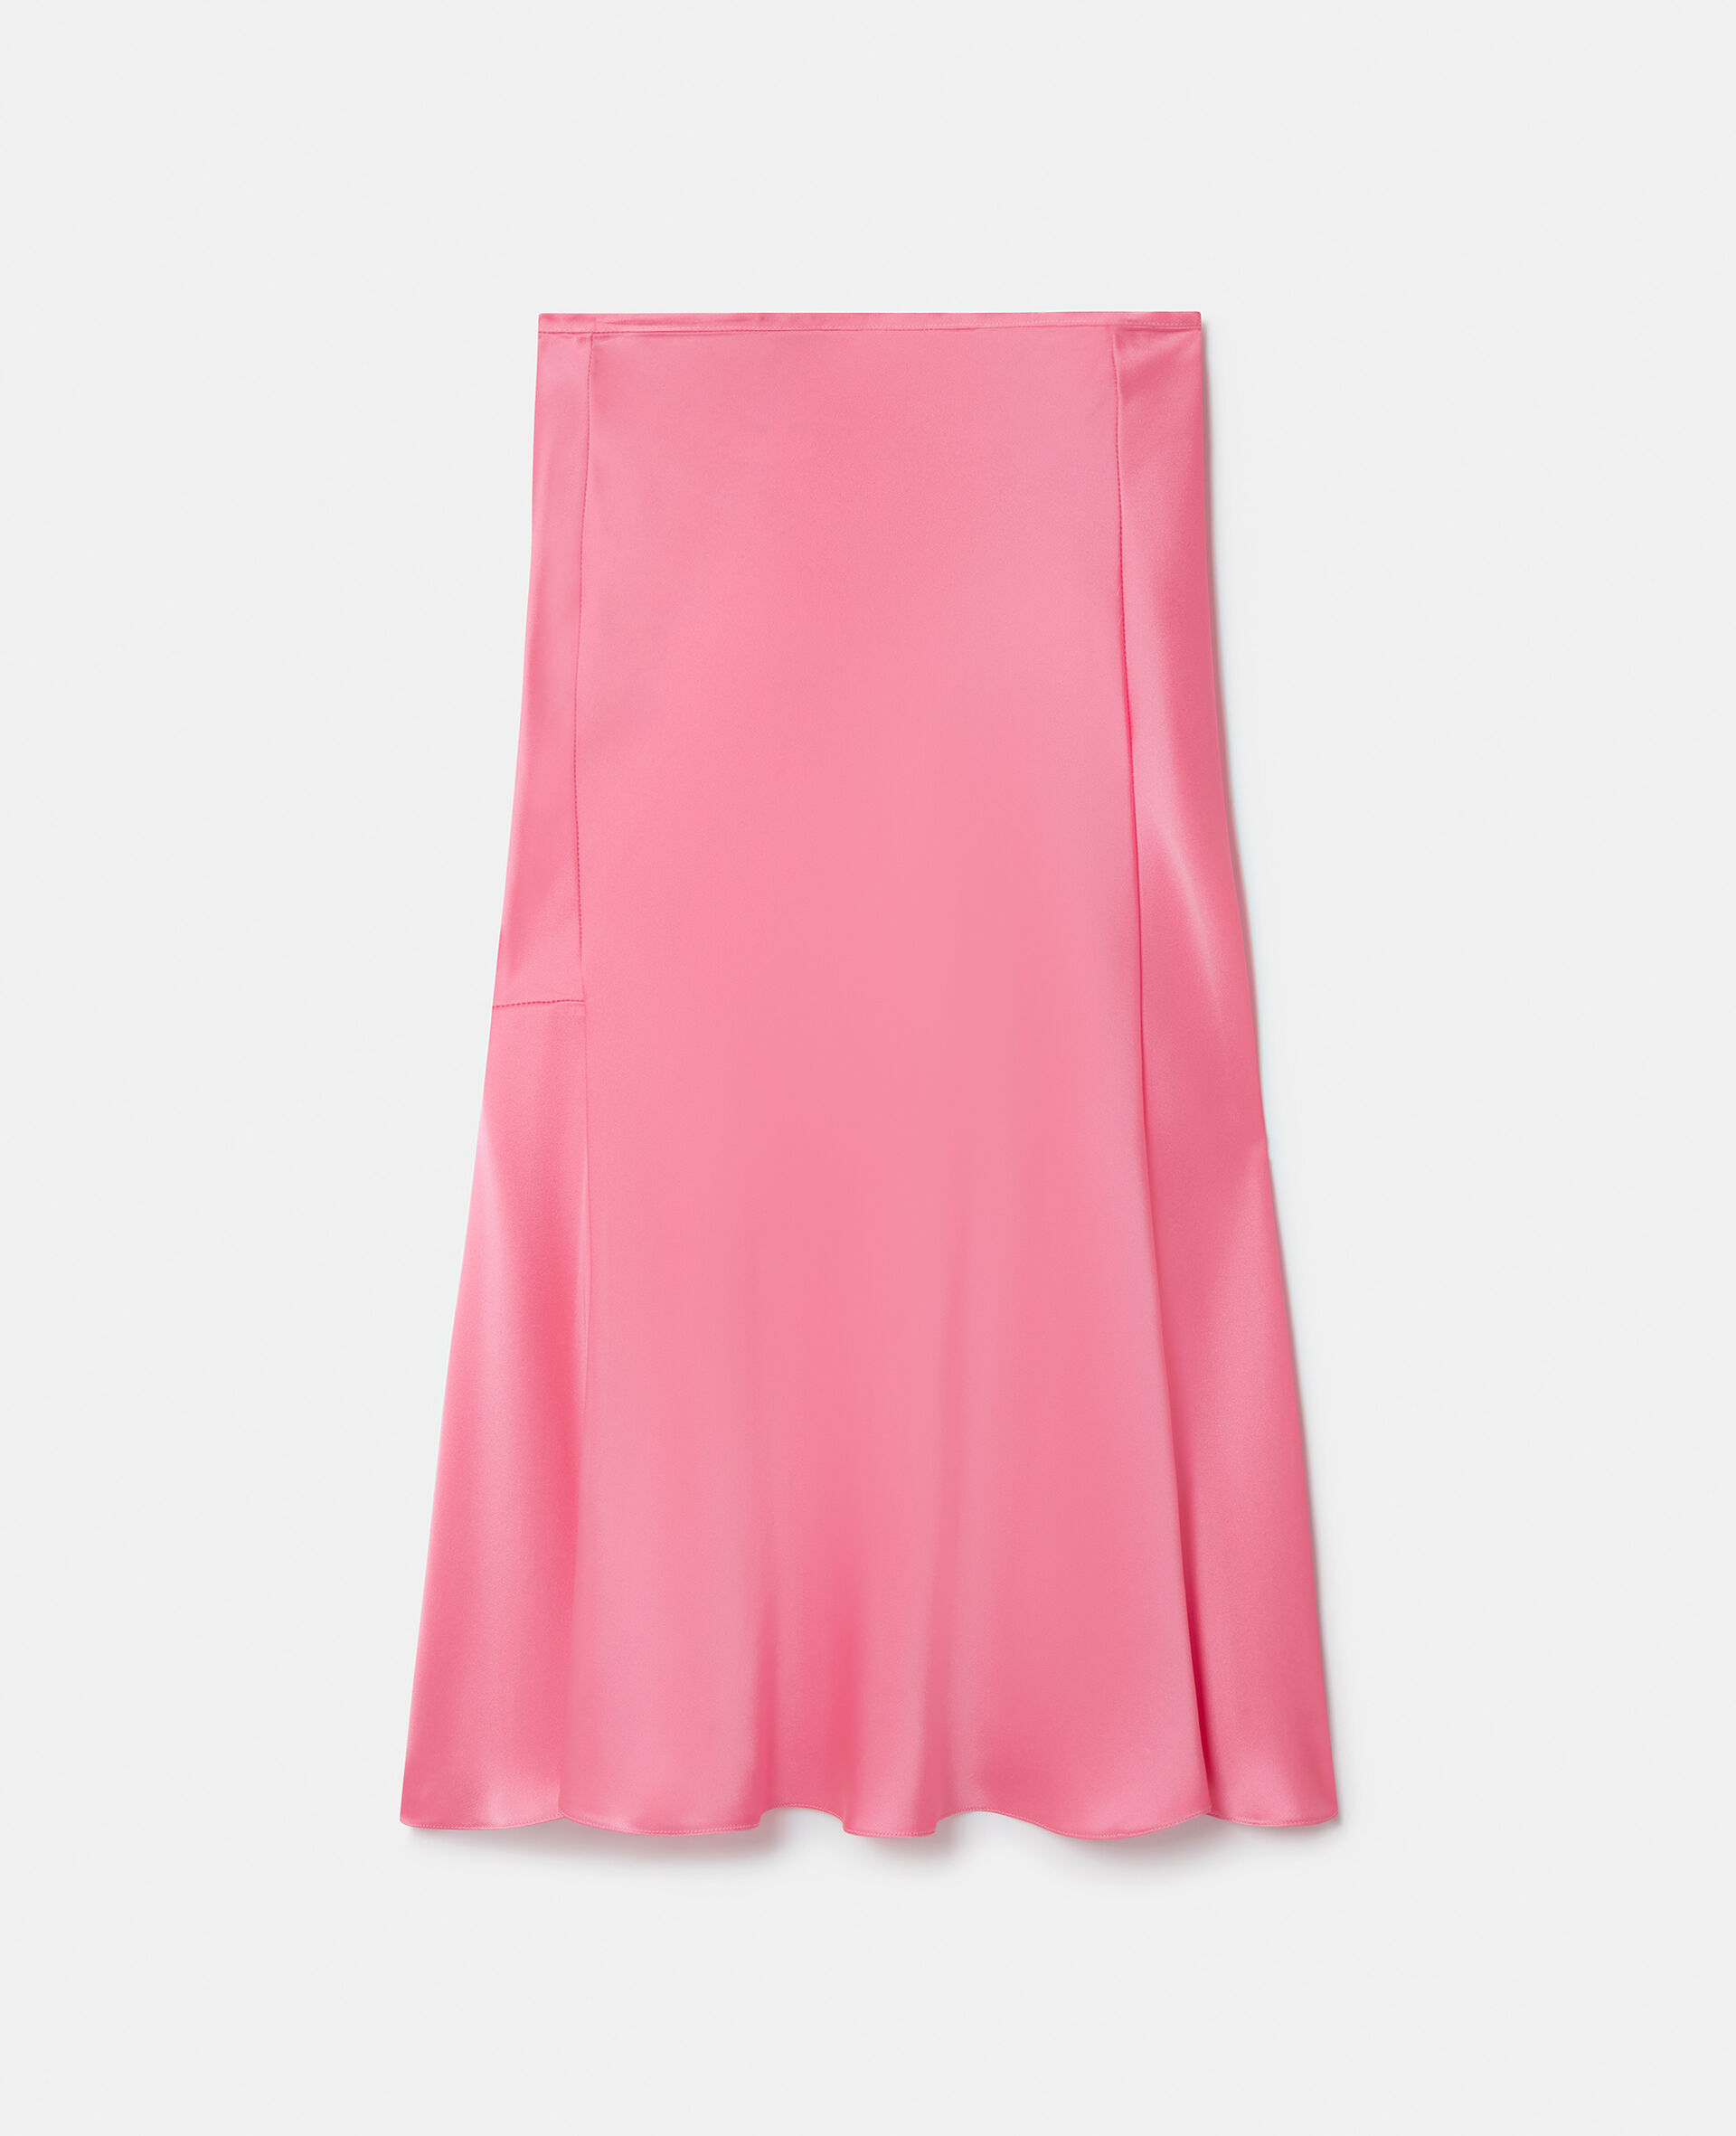 双层缎面斜裁中长半身裙-粉色-medium